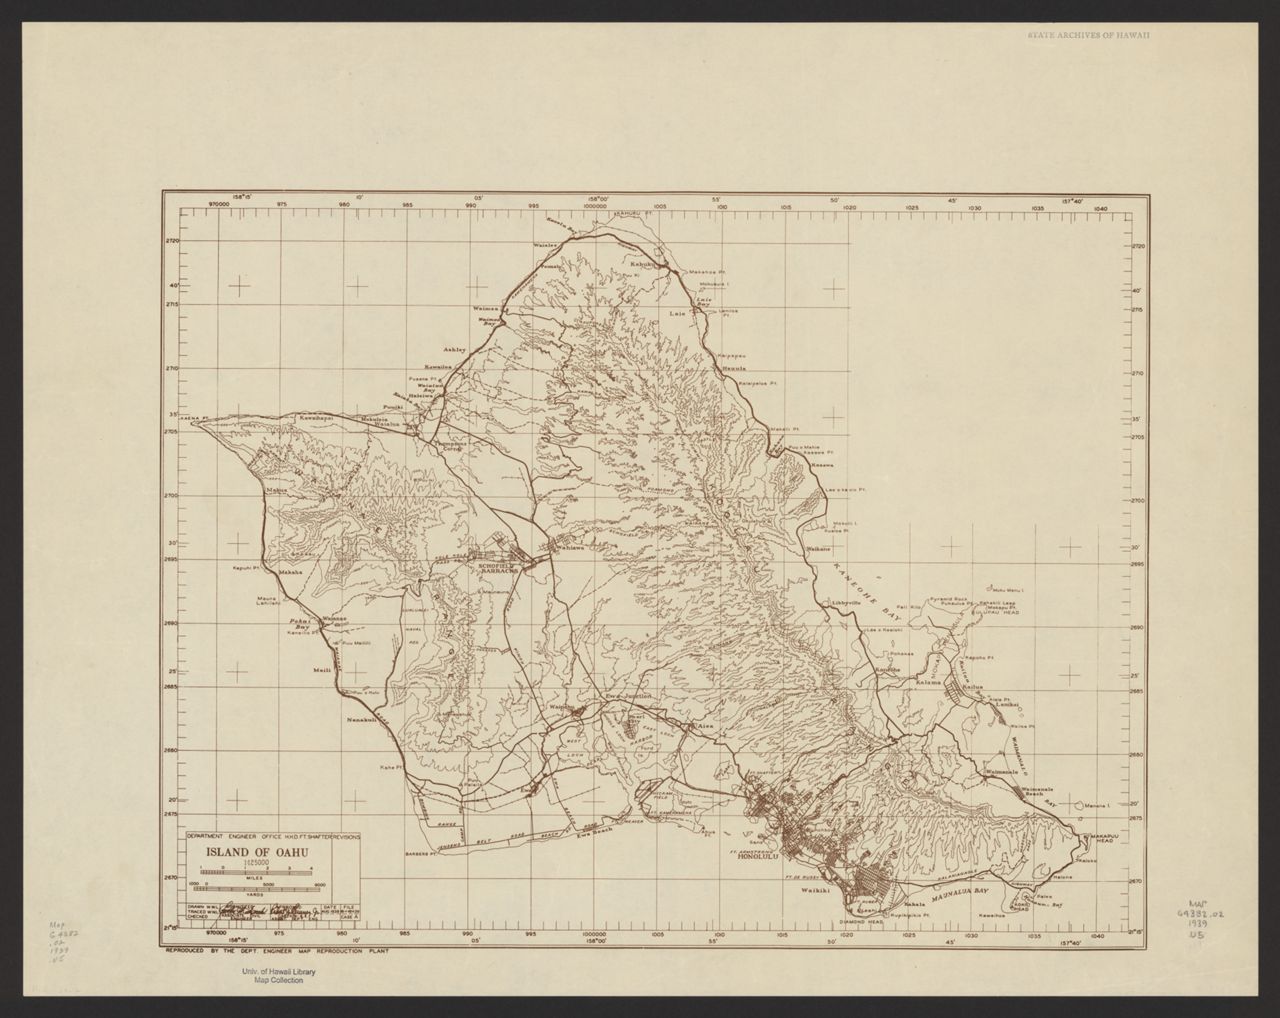 1939 Island of Oahu (military outline)